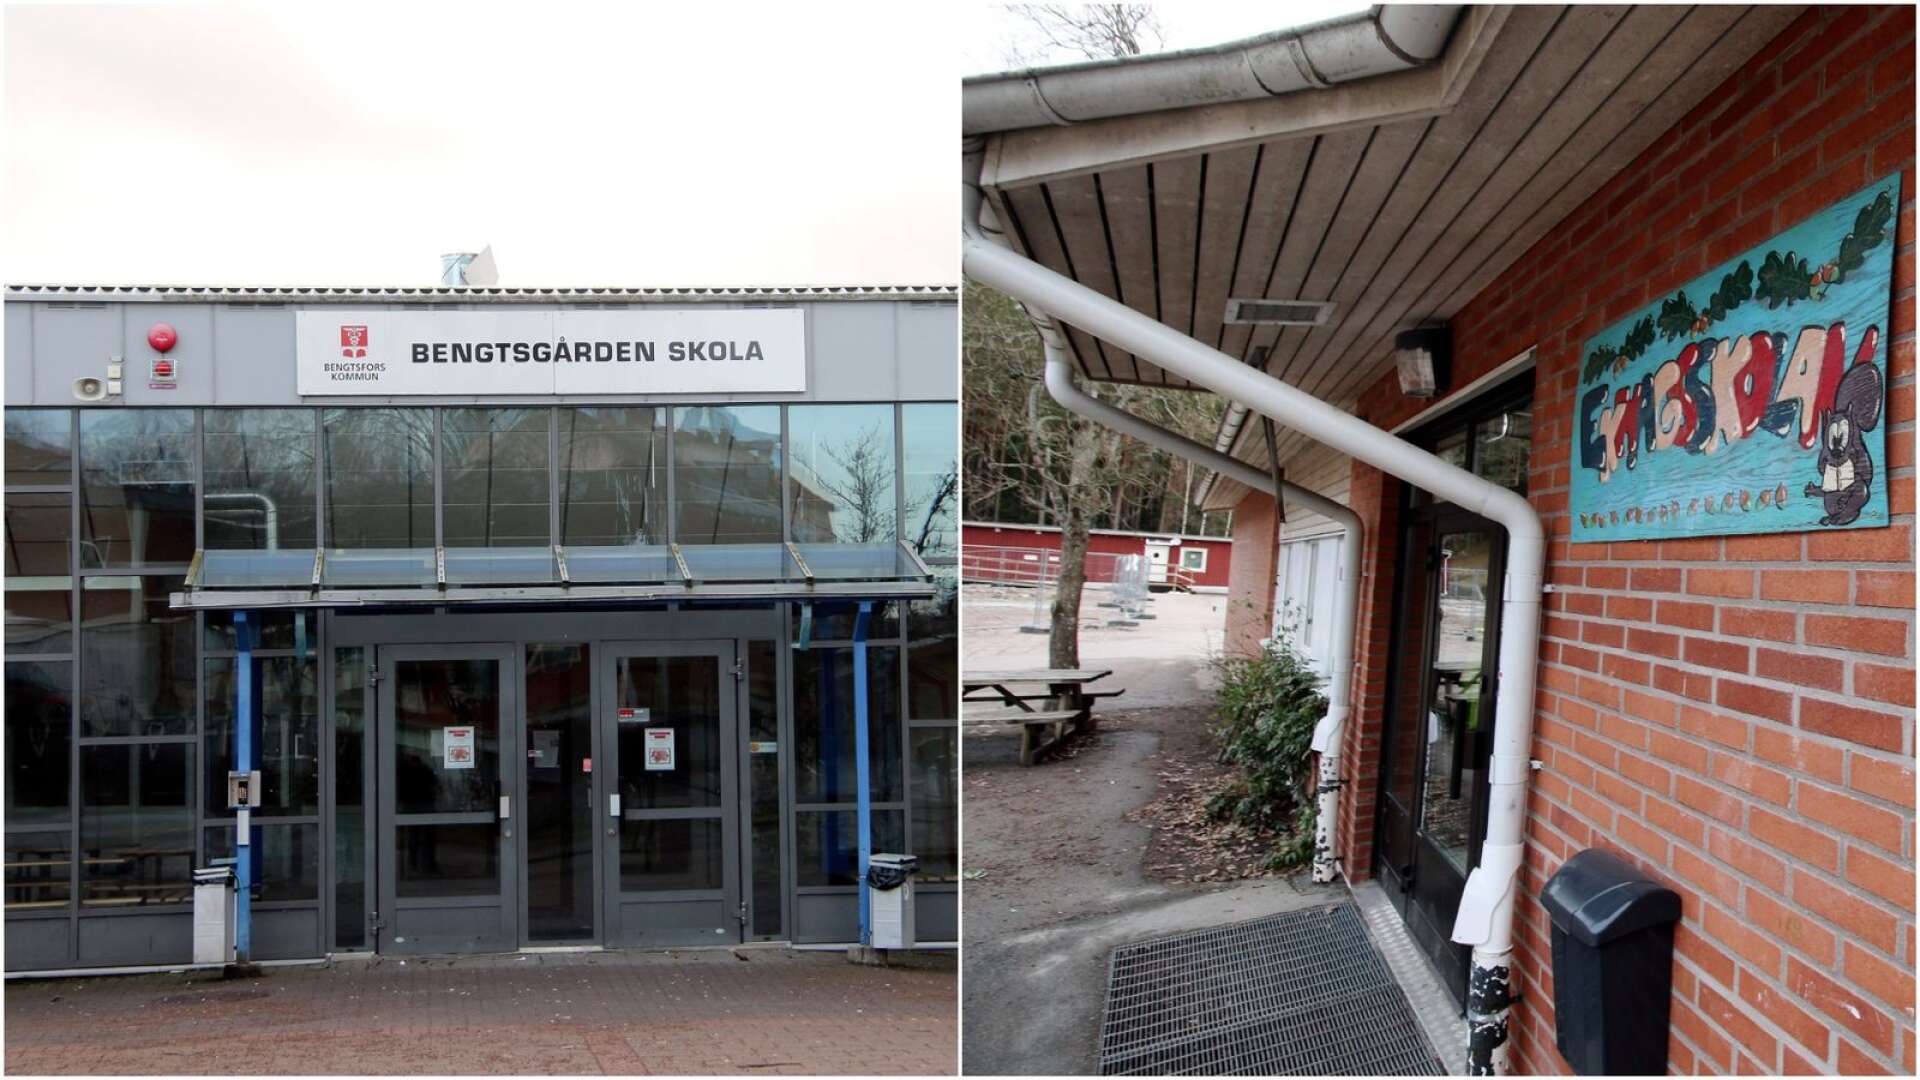 Bengtsfors kommun meddelar nu att det finns bekräftad covid-19-smitta på grundskolorna Bengtsgården i Bengtsfors och Ekhagsskolan i Dals Långed.